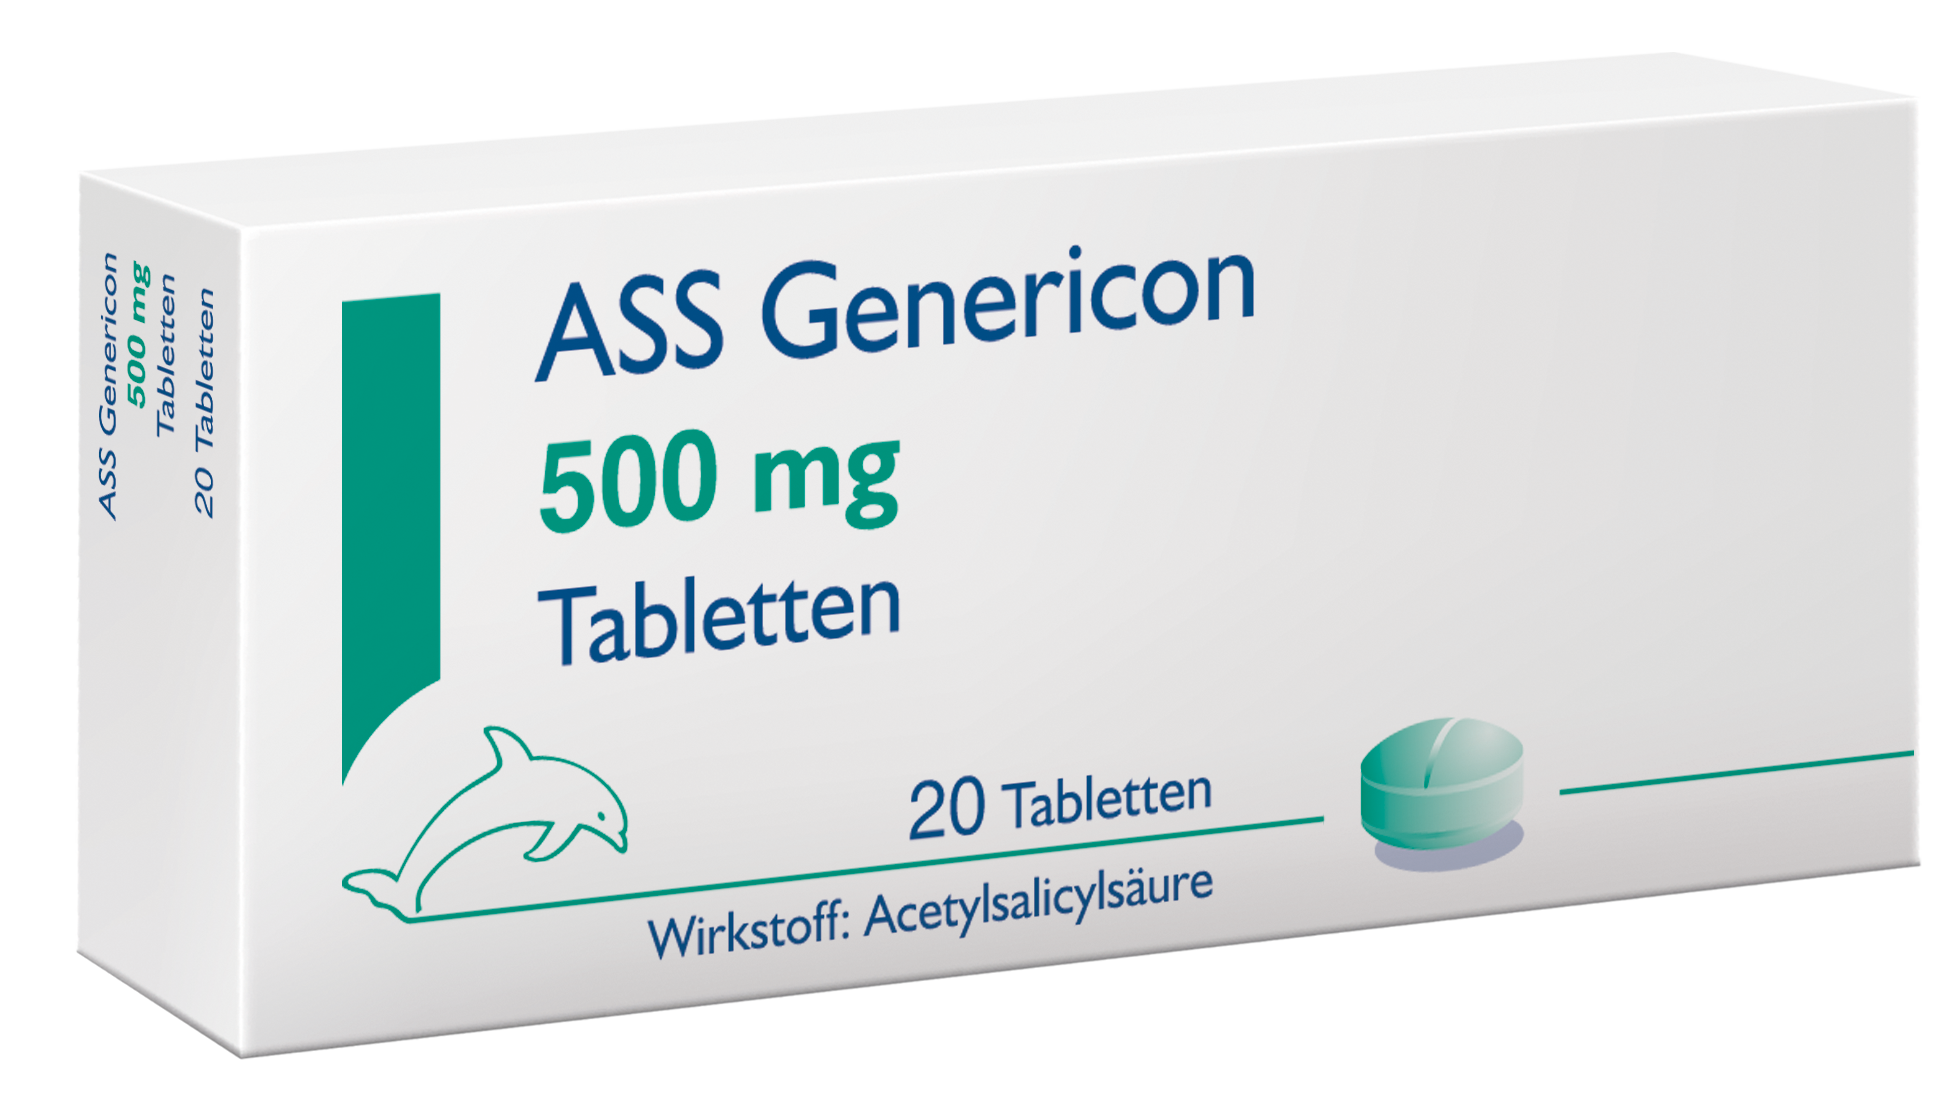 ASS Genericon 500 mg - Tabletten